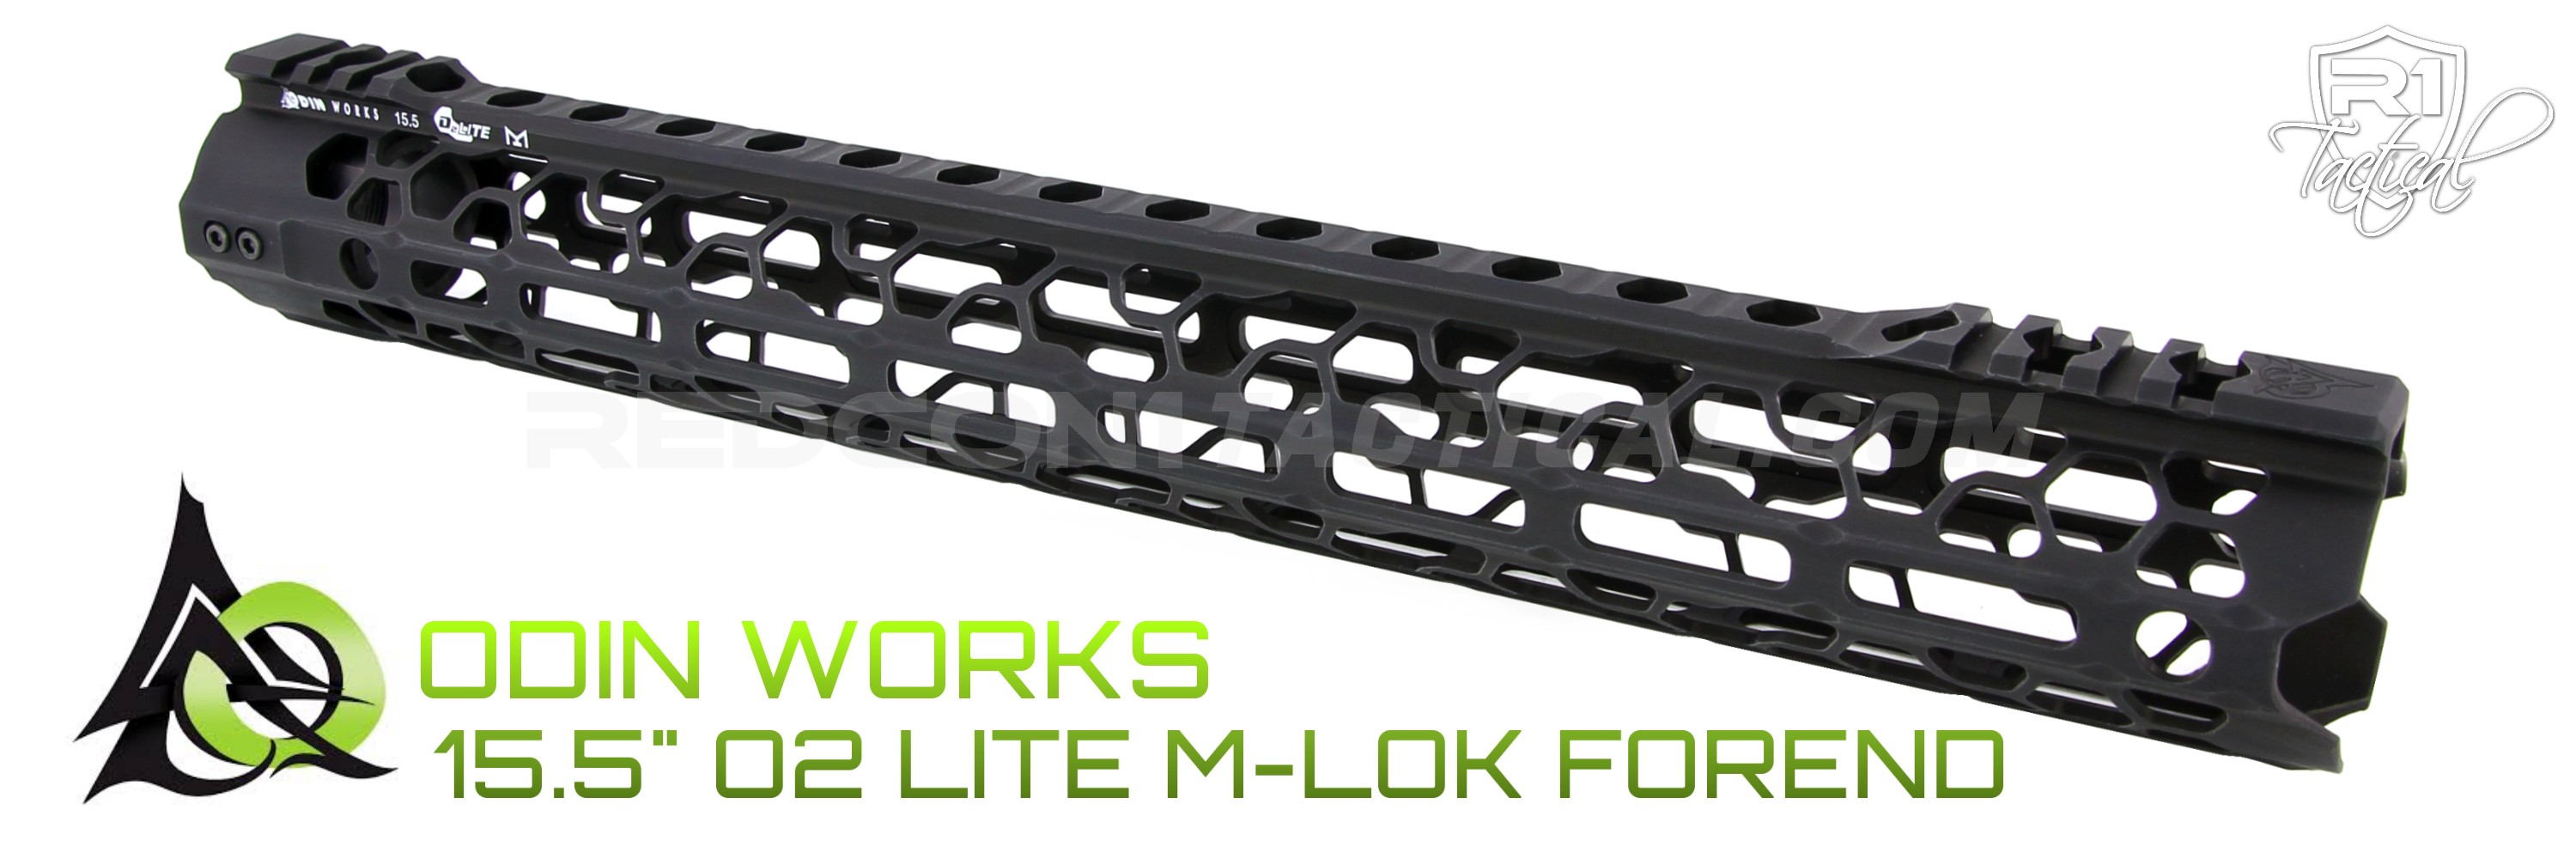 ODIN Works 15.5 O2 Lite M-LOK Forend - Black | R1 Tactical